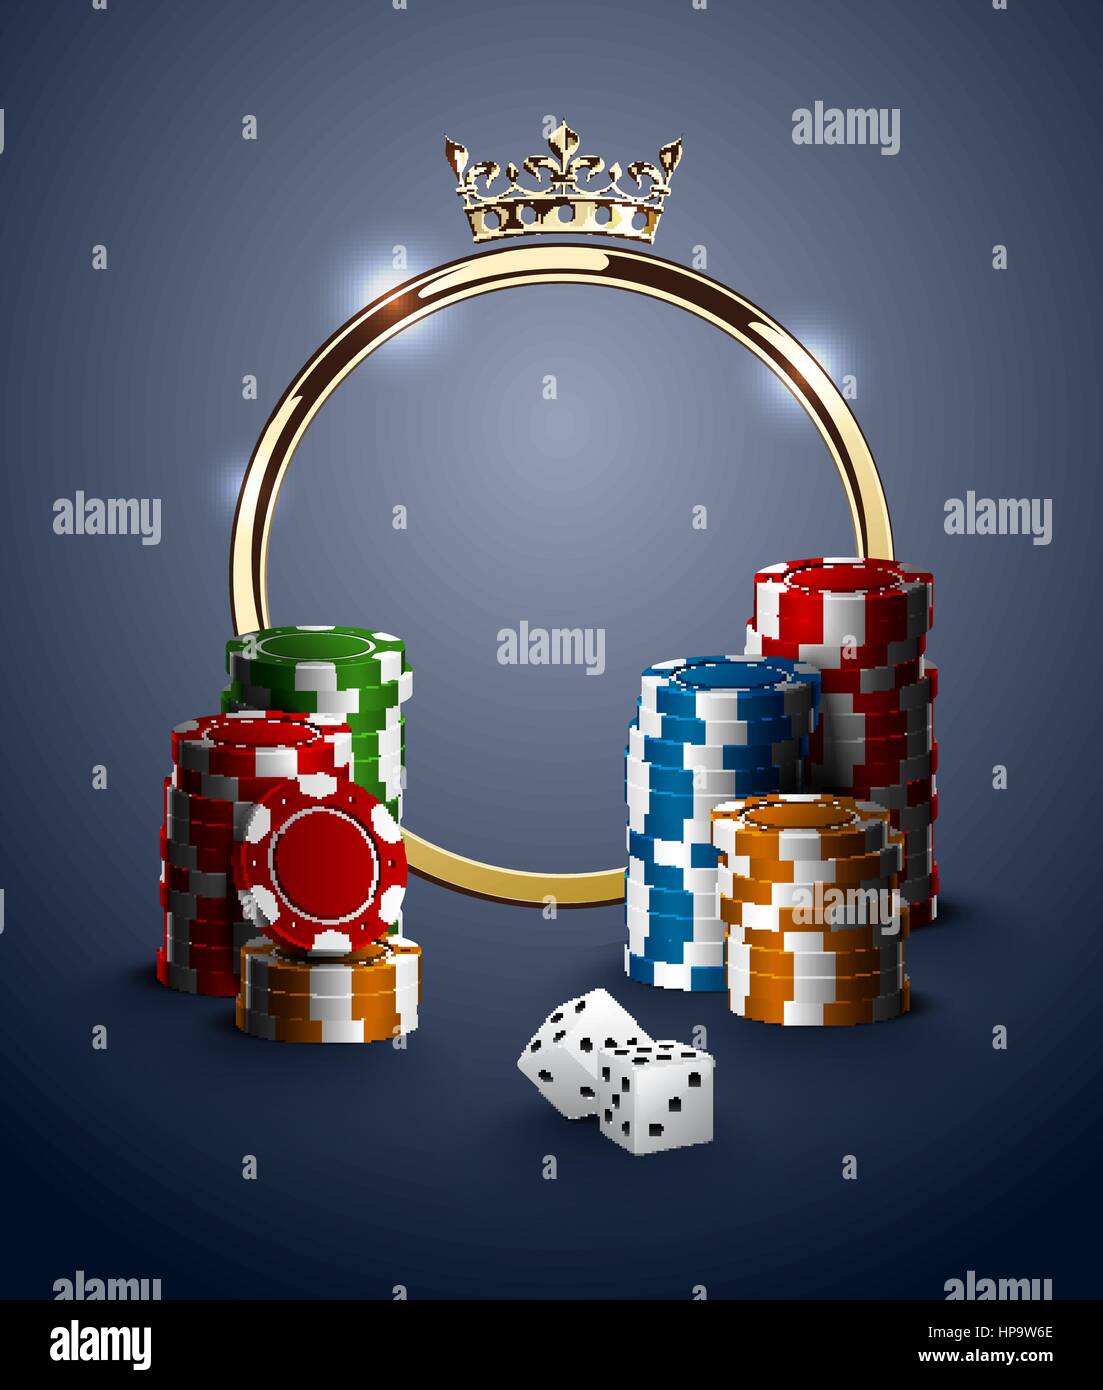 Runde Casino Roulette goldenen Rahmen mit Krone, Stapel Pokerchips und weißen Würfel auf blauen Hintergrund. Gambling Online-Club Vintage Poster. Stock Vektor